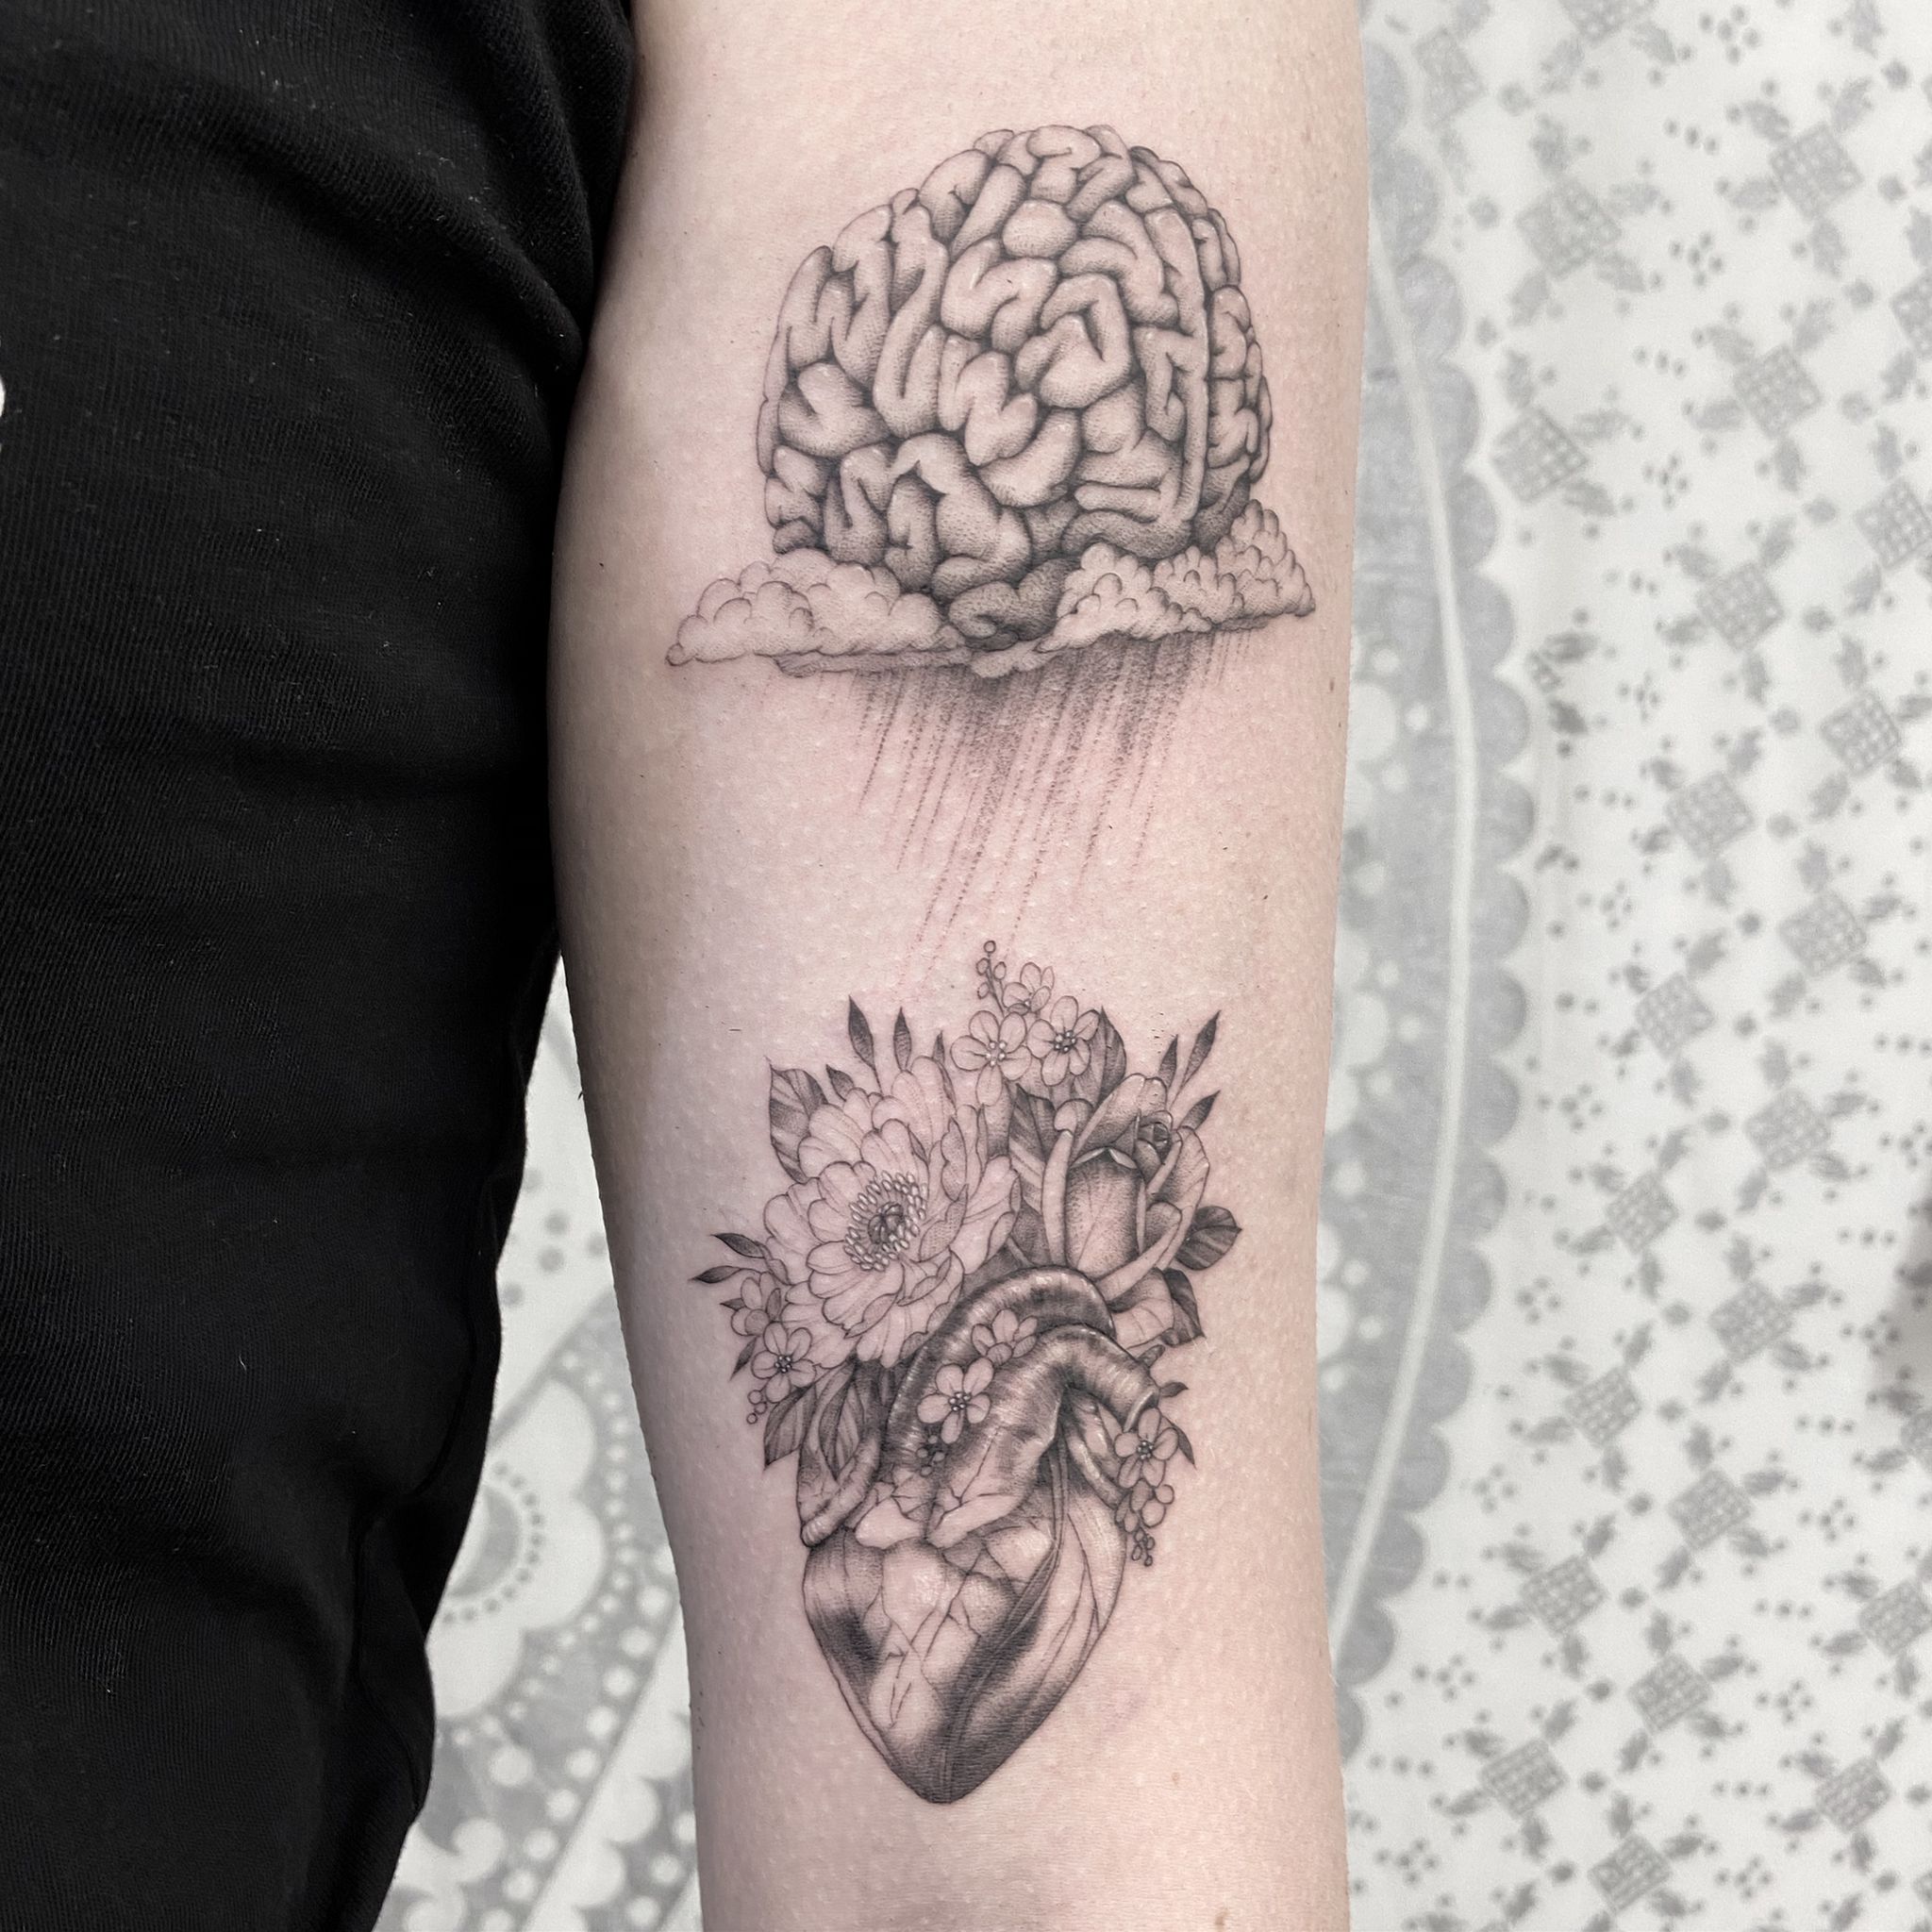 Brain and flowers Hon Tattoo | Brain tattoo, Flower tattoos, Tattoos